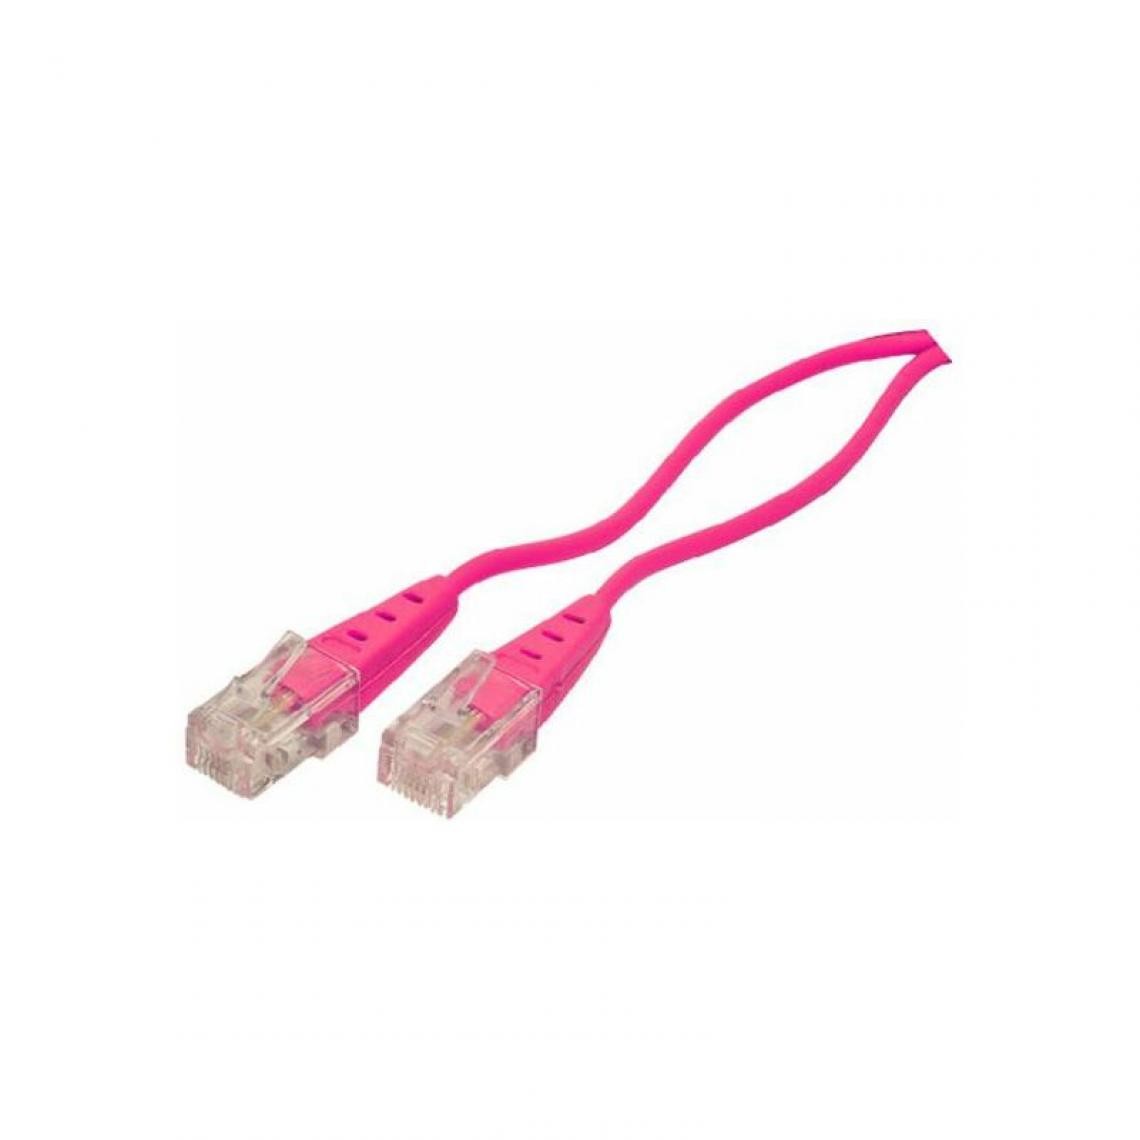 shiverpeaks - shiverpeaks BASIC-S Câble de connexion RNIS, magenta, 2,0 m () - Accessoires Téléphone Fixe